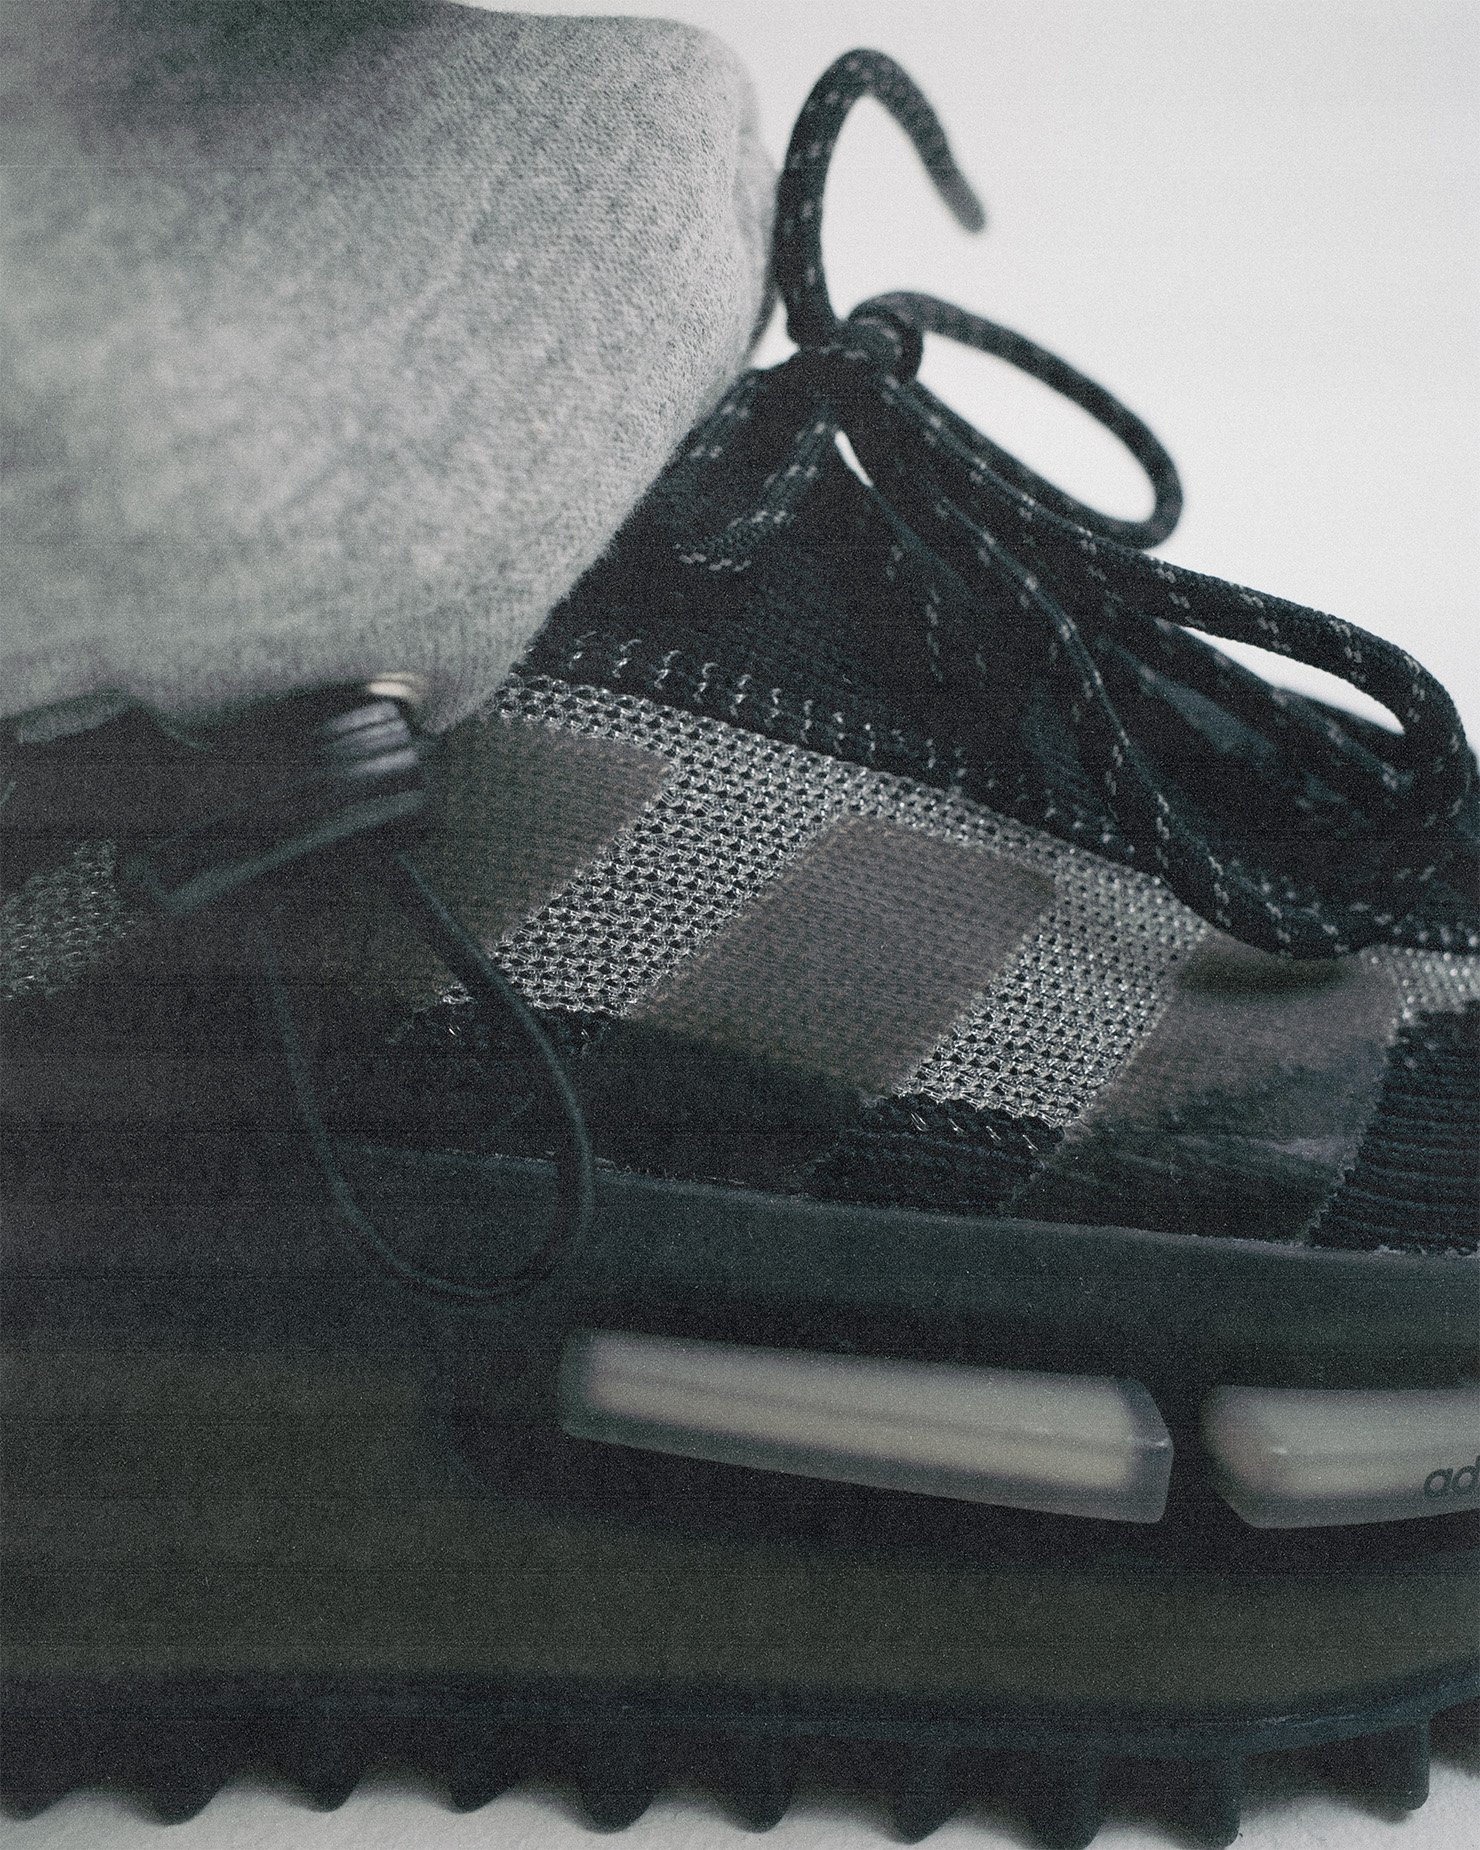 Progressive Design Meets the Future of Footwear - the adidas Originals ...